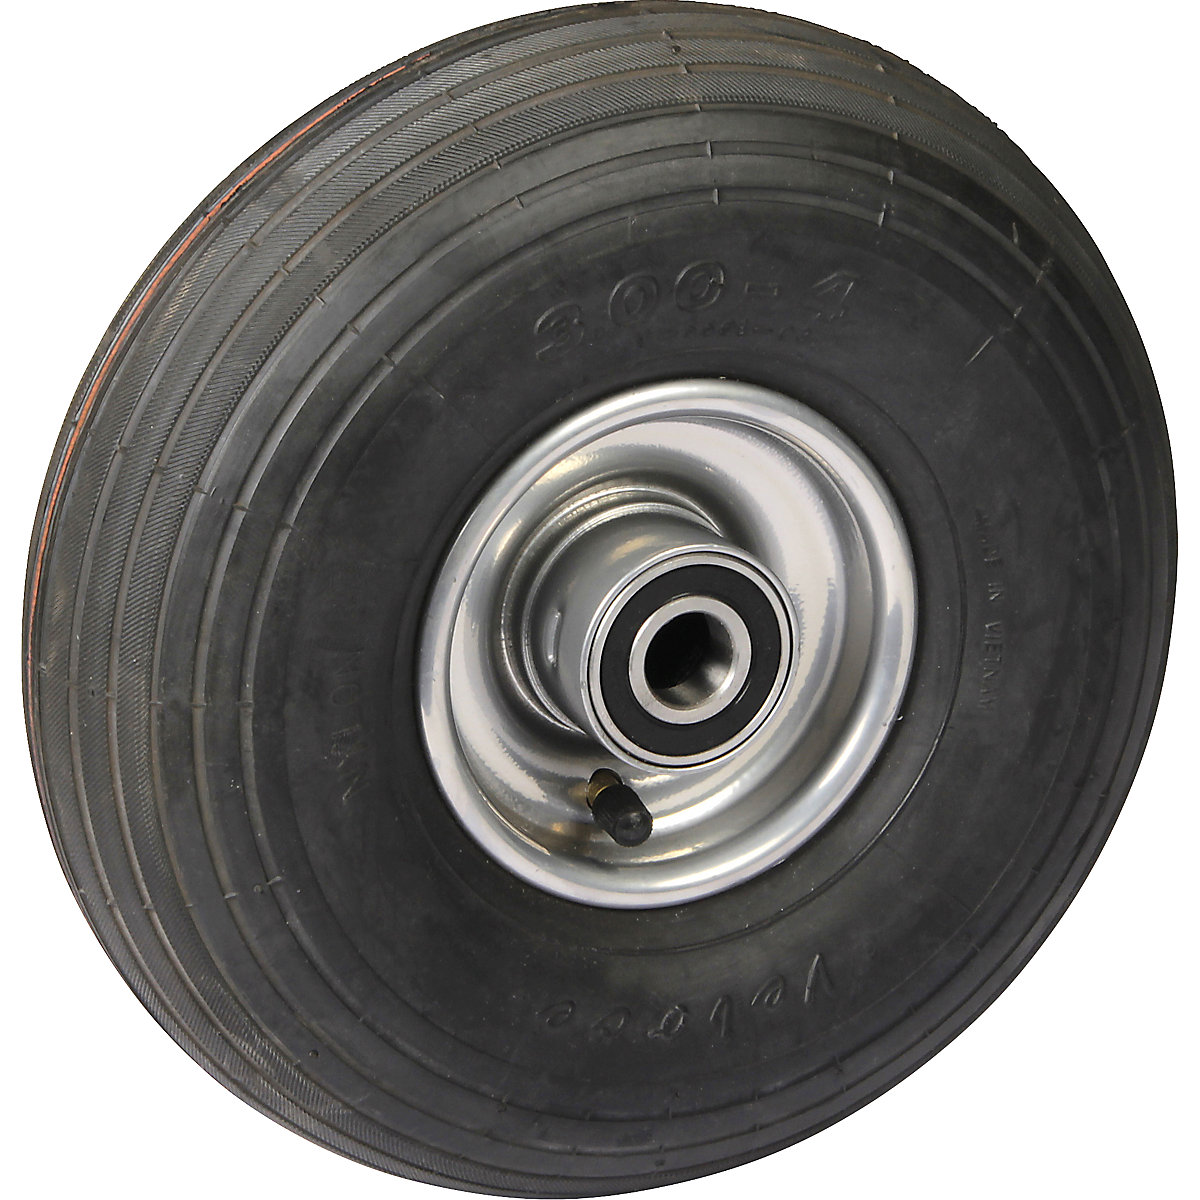 Pneumatika, kolo s 1dílným diskem z ocelového plechu, Ø x šířka kola 260 x 85 mm, profil obruče s drážkami, s kuličkovými ložisky-3